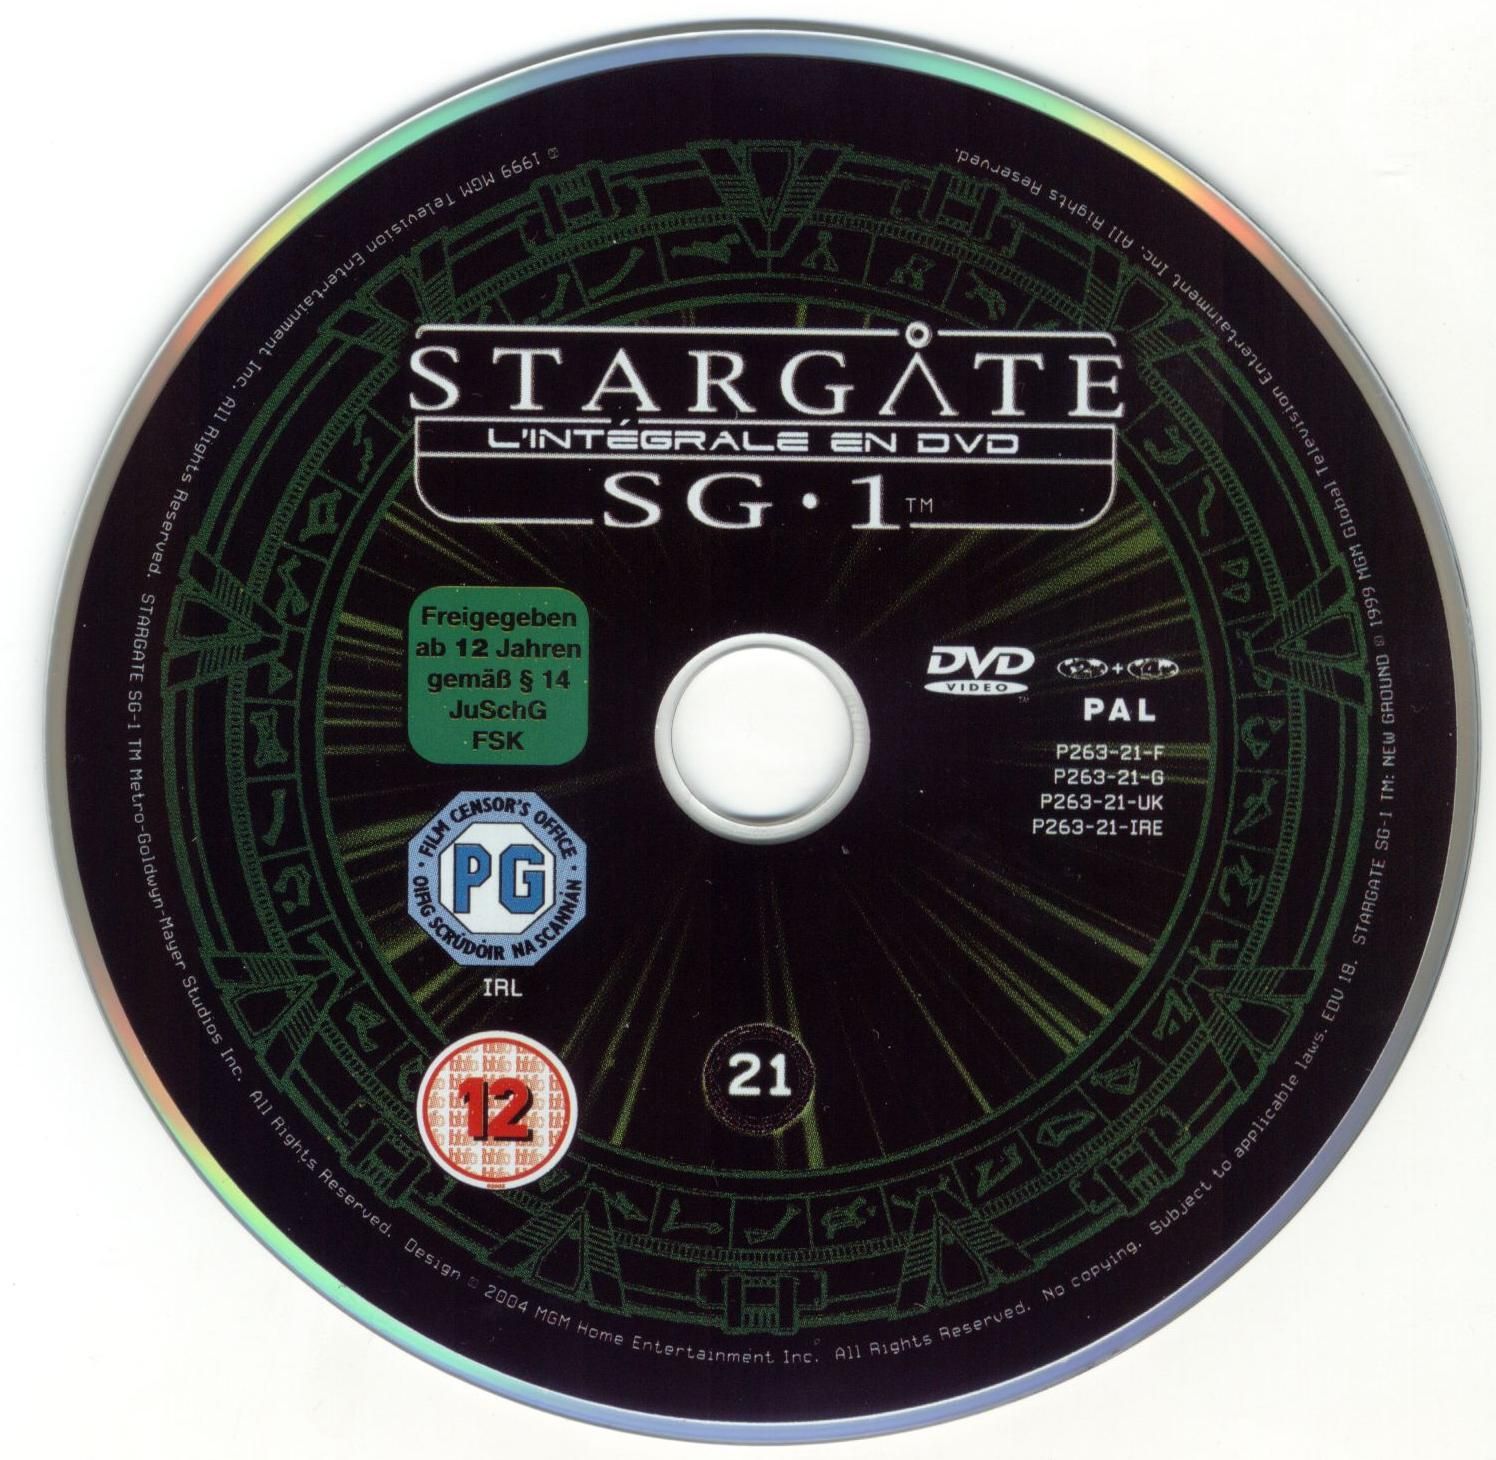 Stargate saison 3 vol 21